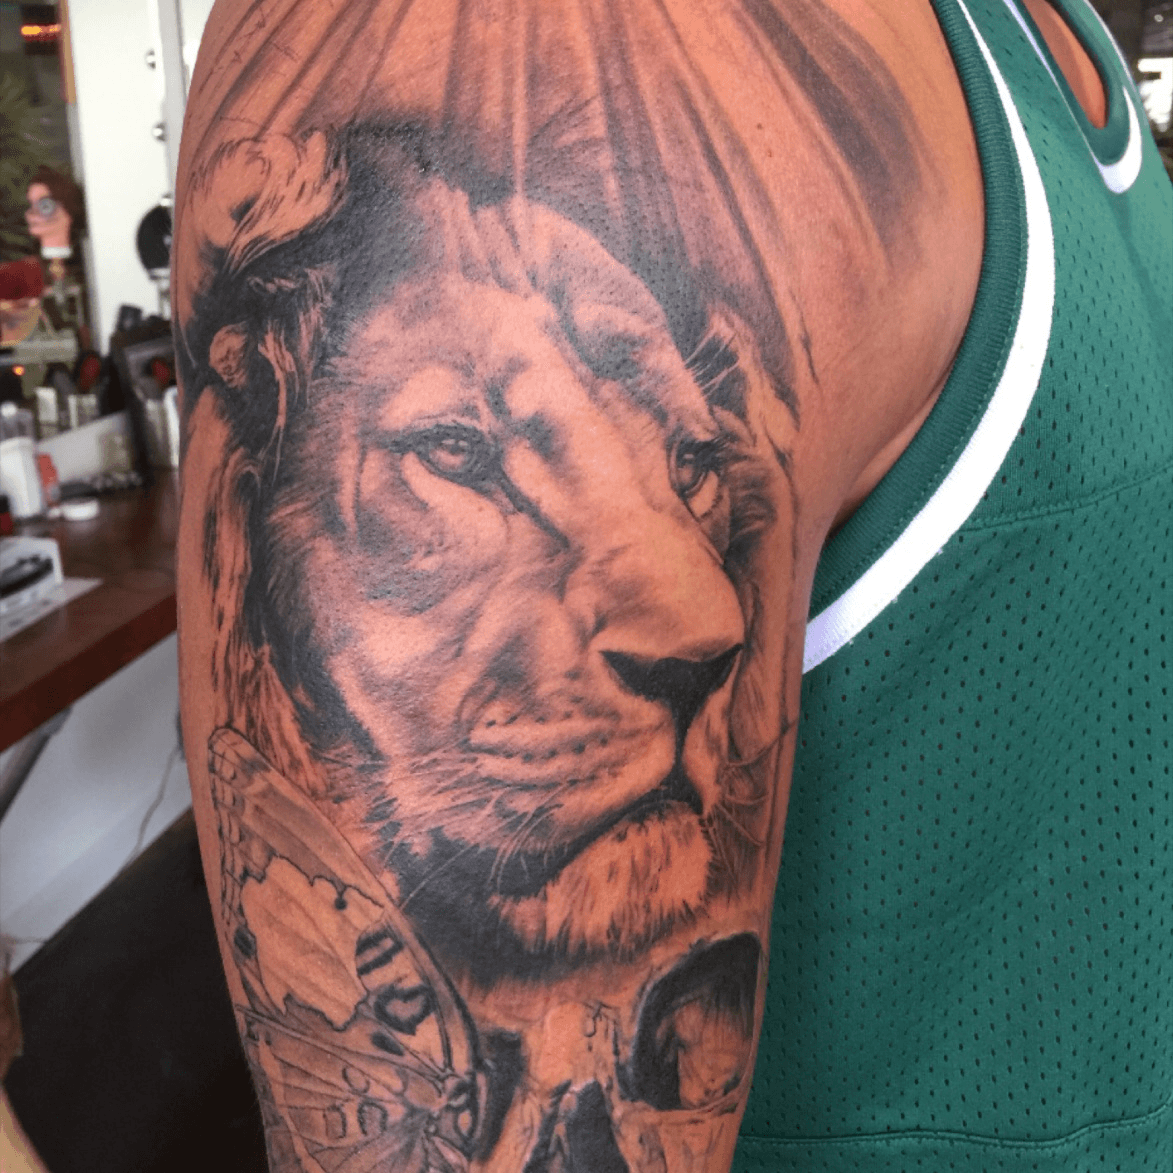 Tattoo uploaded by Steph • Lion in the sun. Work in progress. #nofilter # lion #blackandgray #sleeve #inprogress • Tattoodo